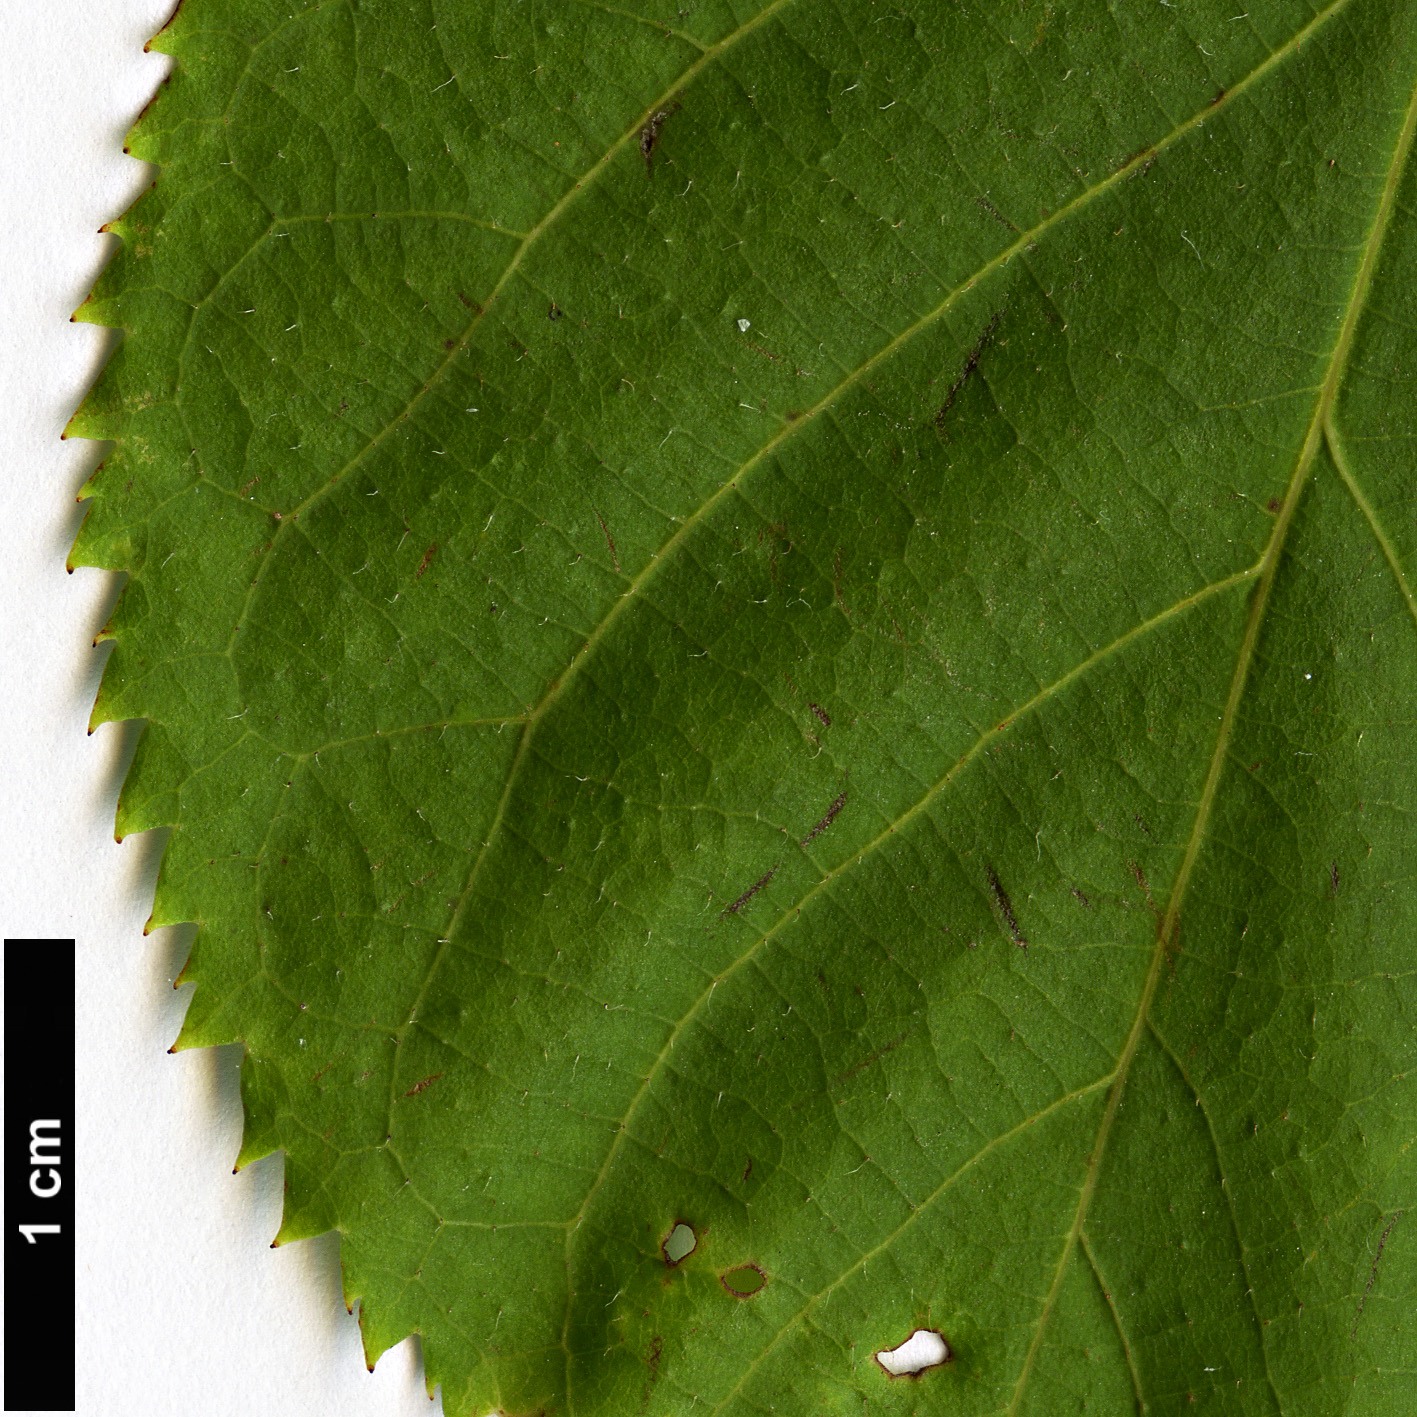 High resolution image: Family: Rosaceae - Genus: Prunus - Taxon: verecunda - SpeciesSub: ’Autumn Glory’